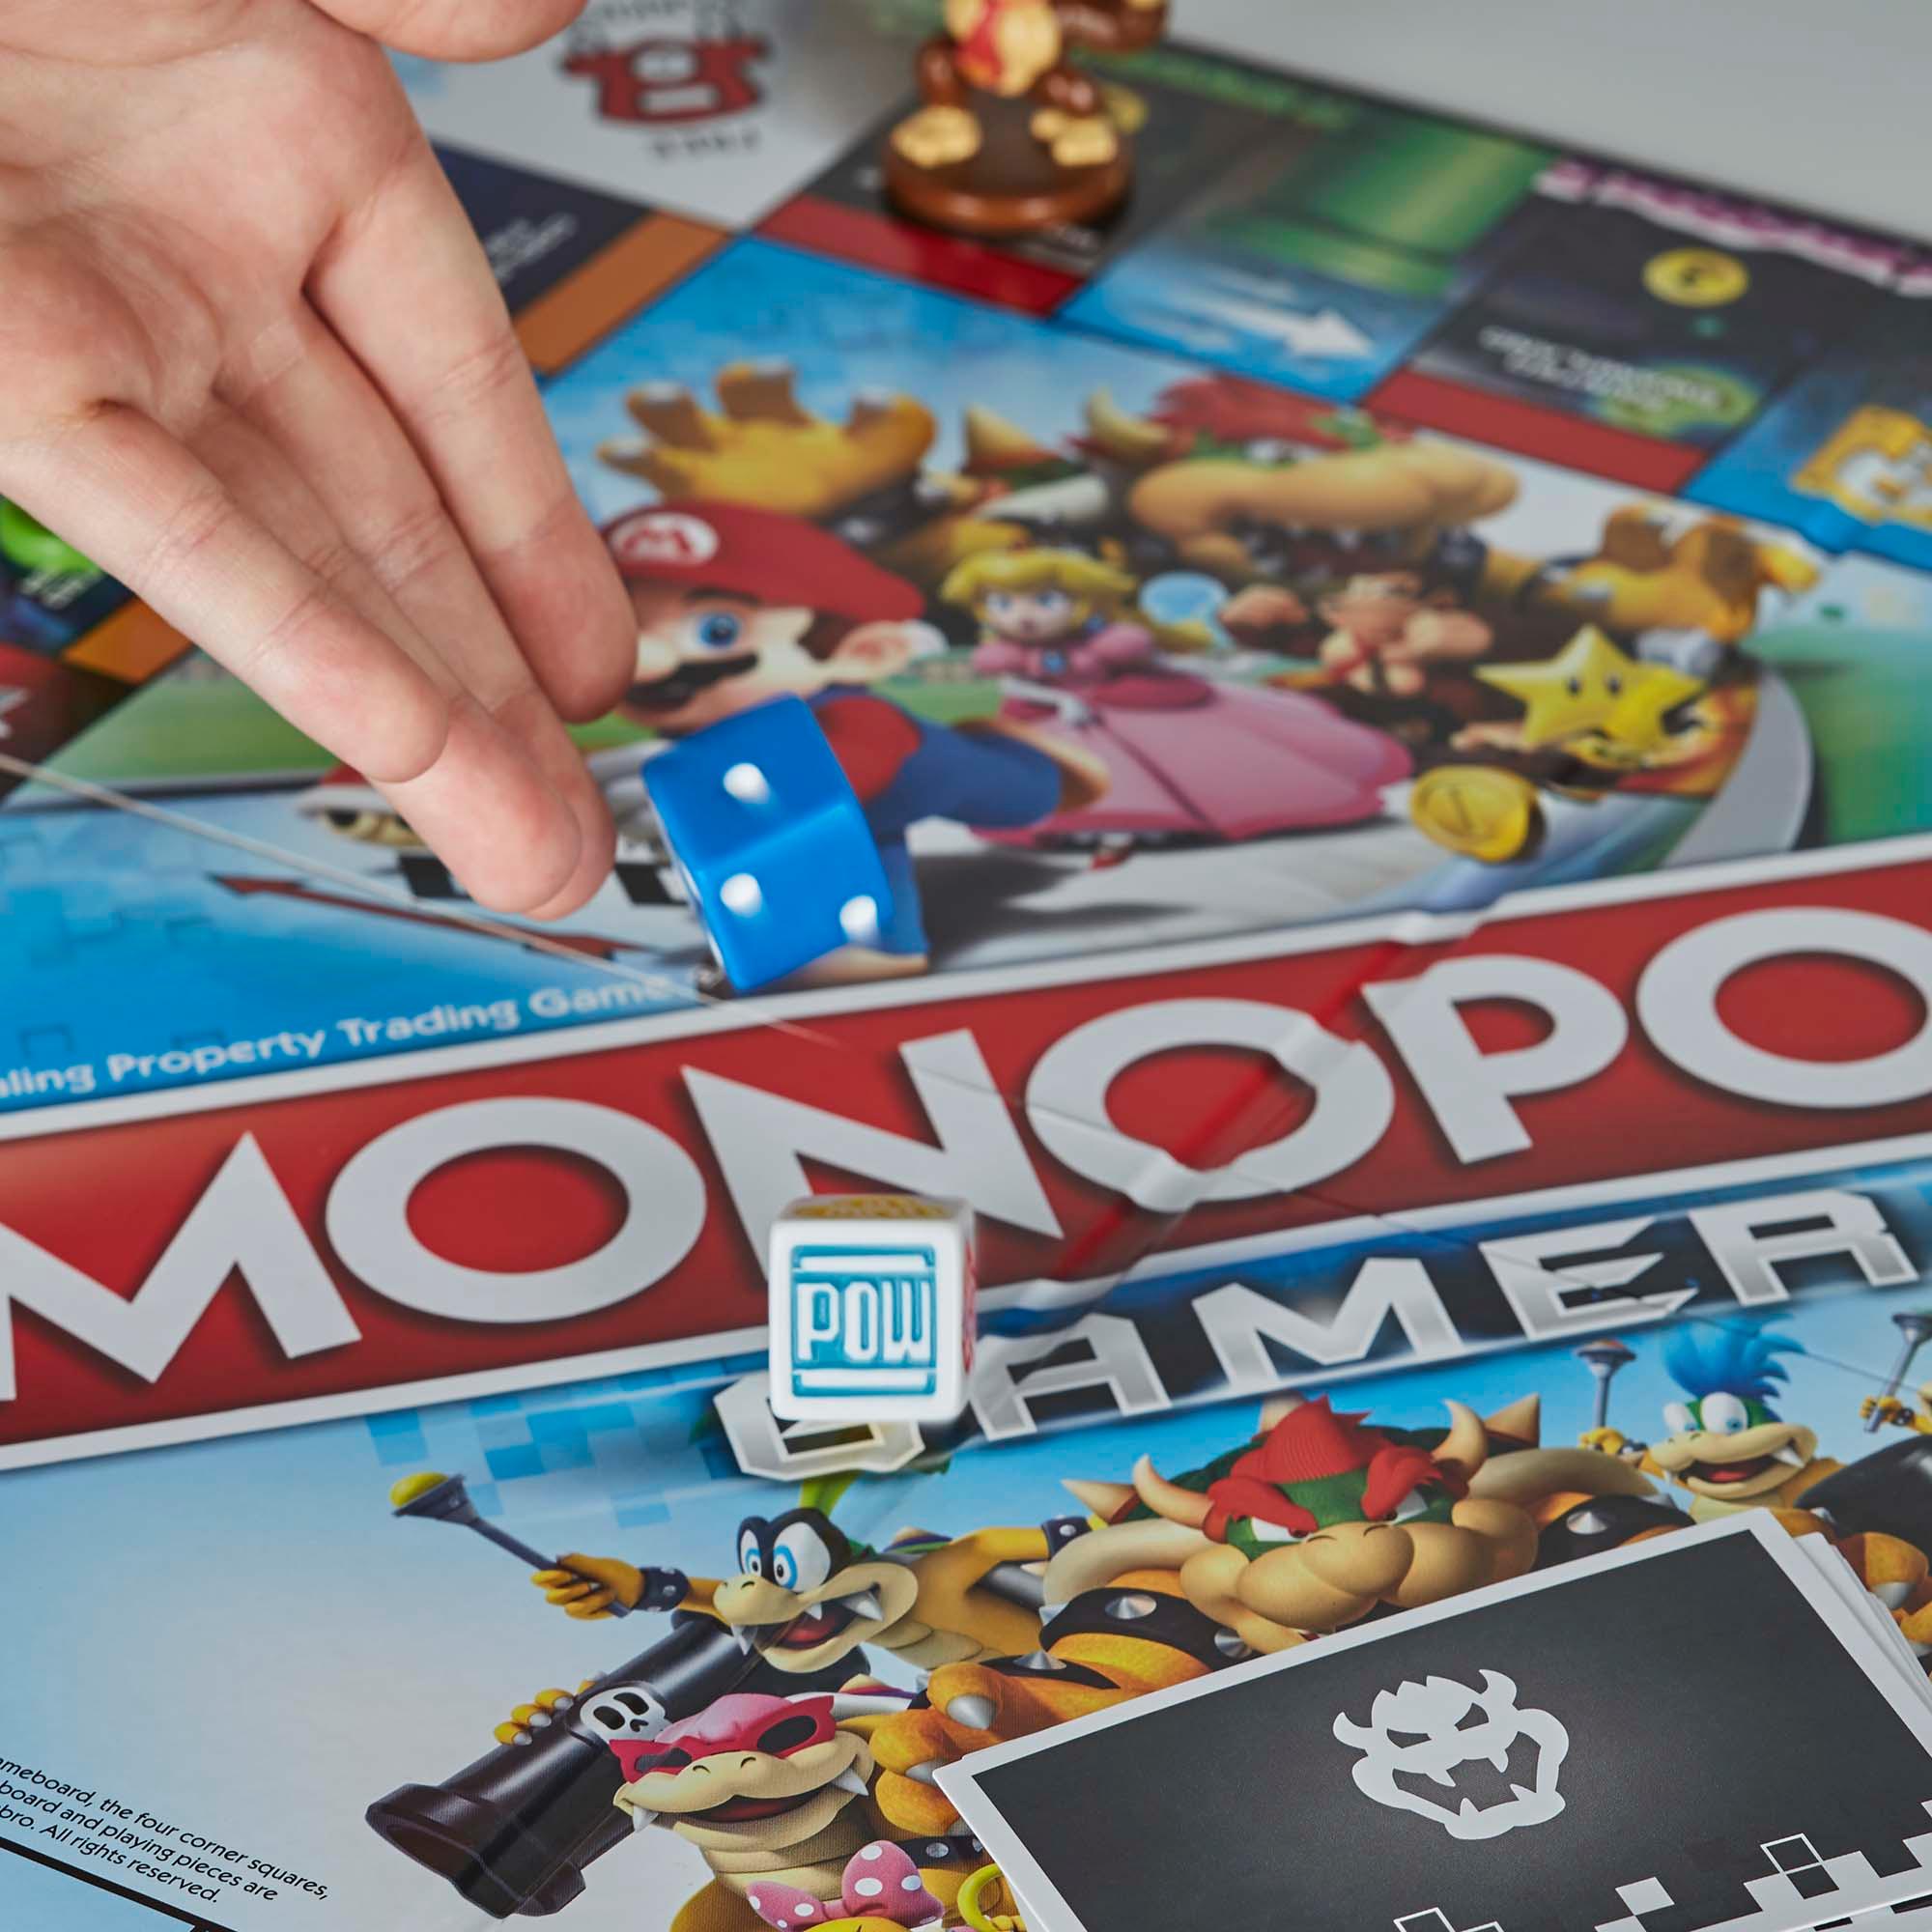 Monopoly Gamer Super Mario Premium Edition